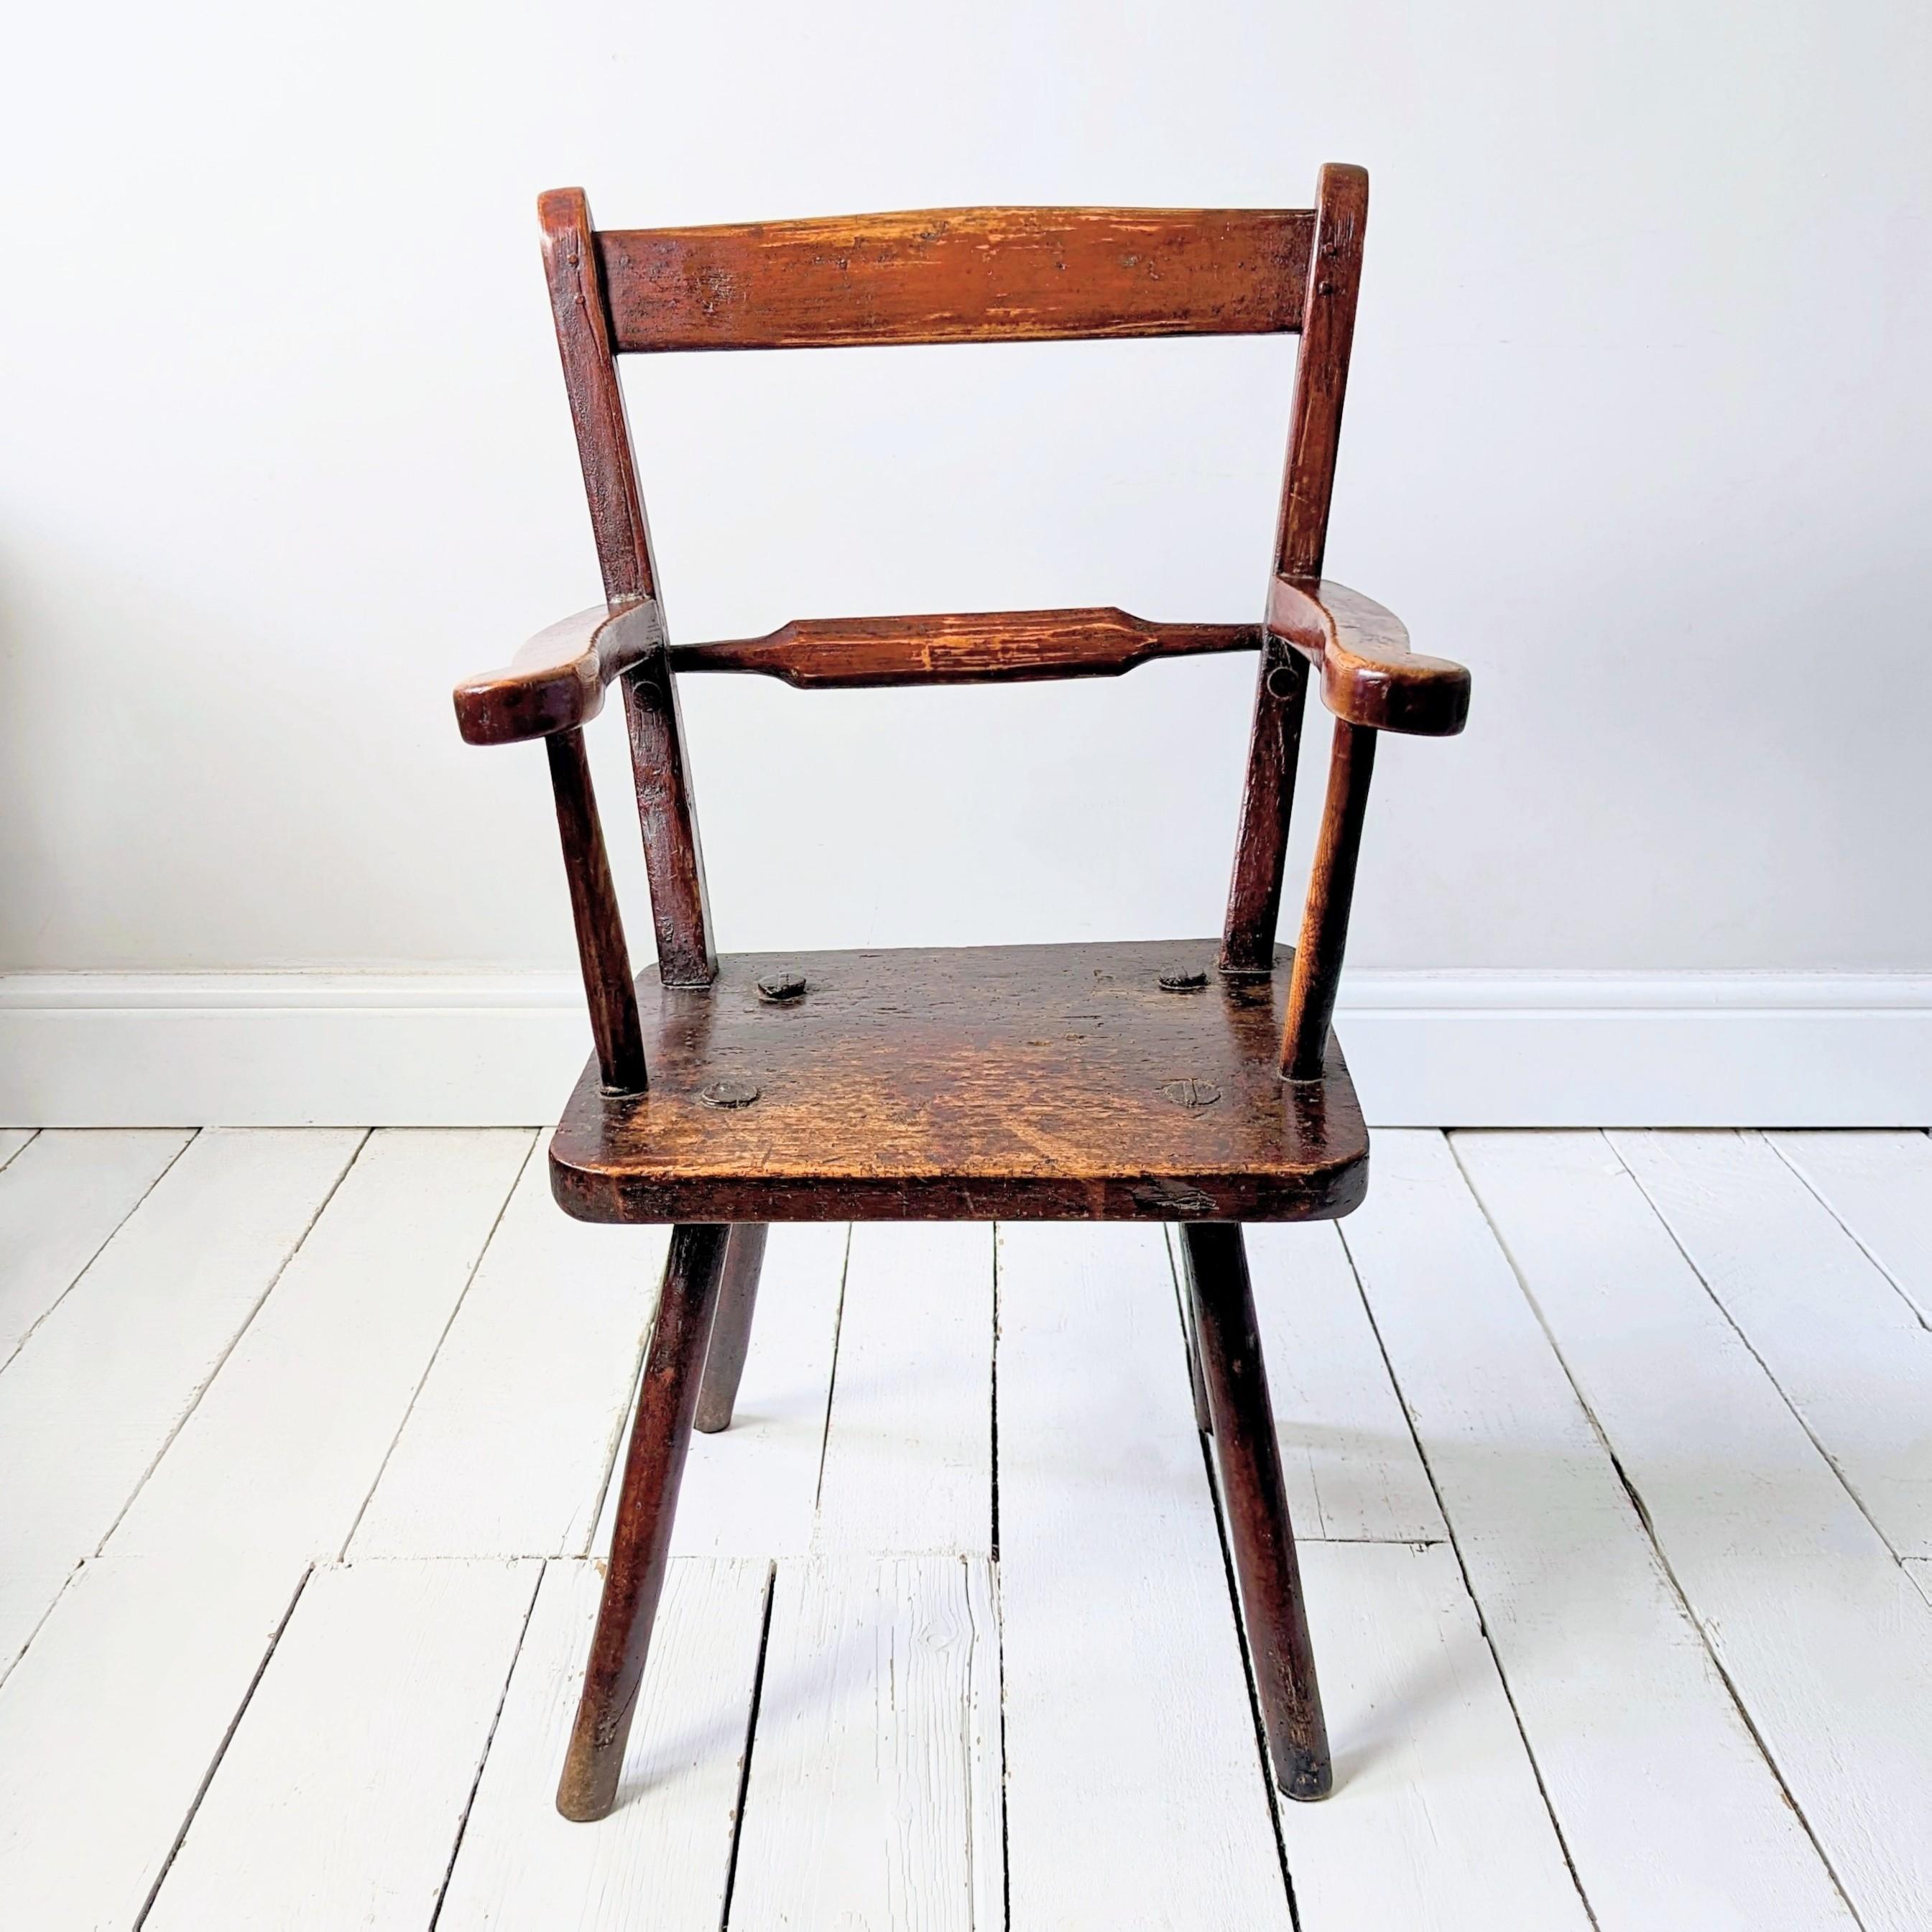 Ein wunderschöner Sessel im Oxford-Stil mit gerollter Rückenlehne aus Esche und Birke. 

Von skulpturaler Form und ein seltenes, primitives Beispiel für den volkstümlichen Stil der Stuhlherstellung, der im Thames Valley und in den Chilterns im